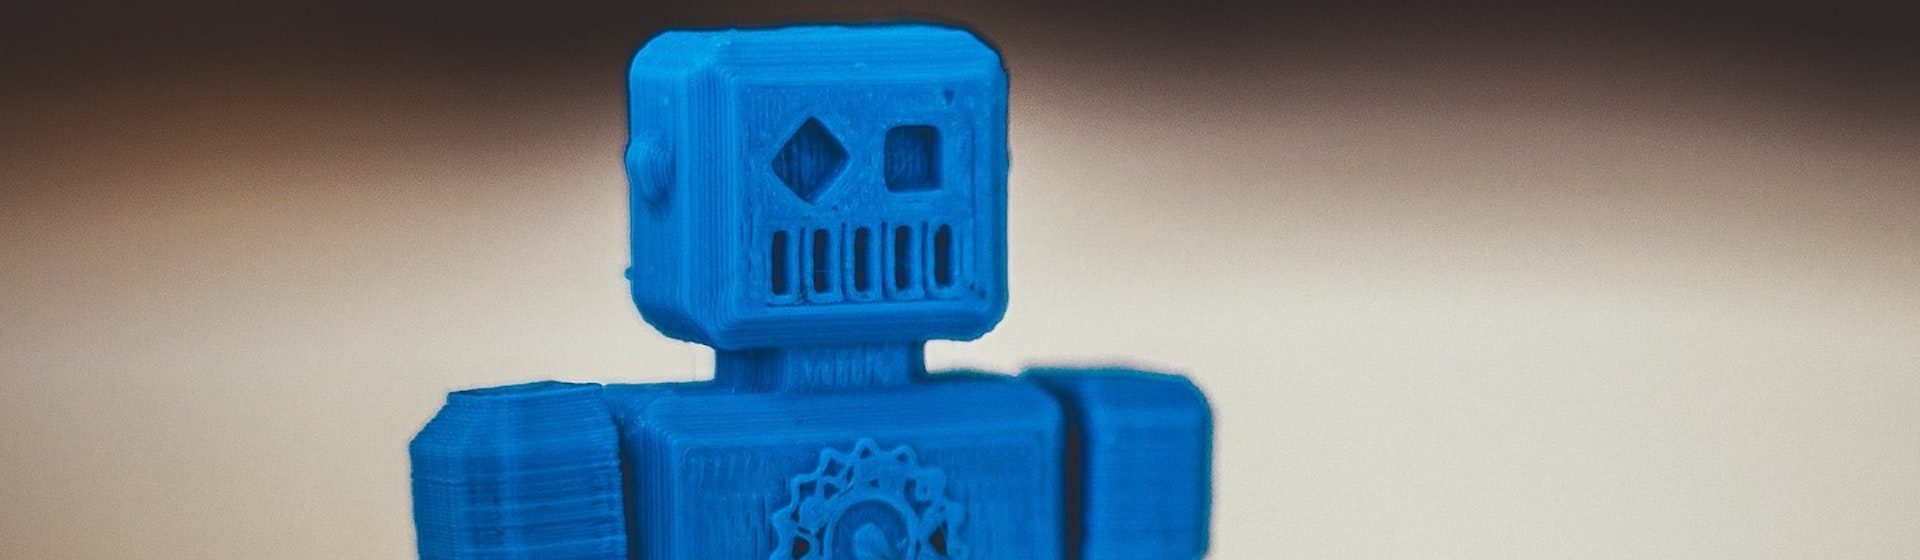 Tipos de impresoras 3D: ¡Conviértete en un dios del modelado tridimensional!